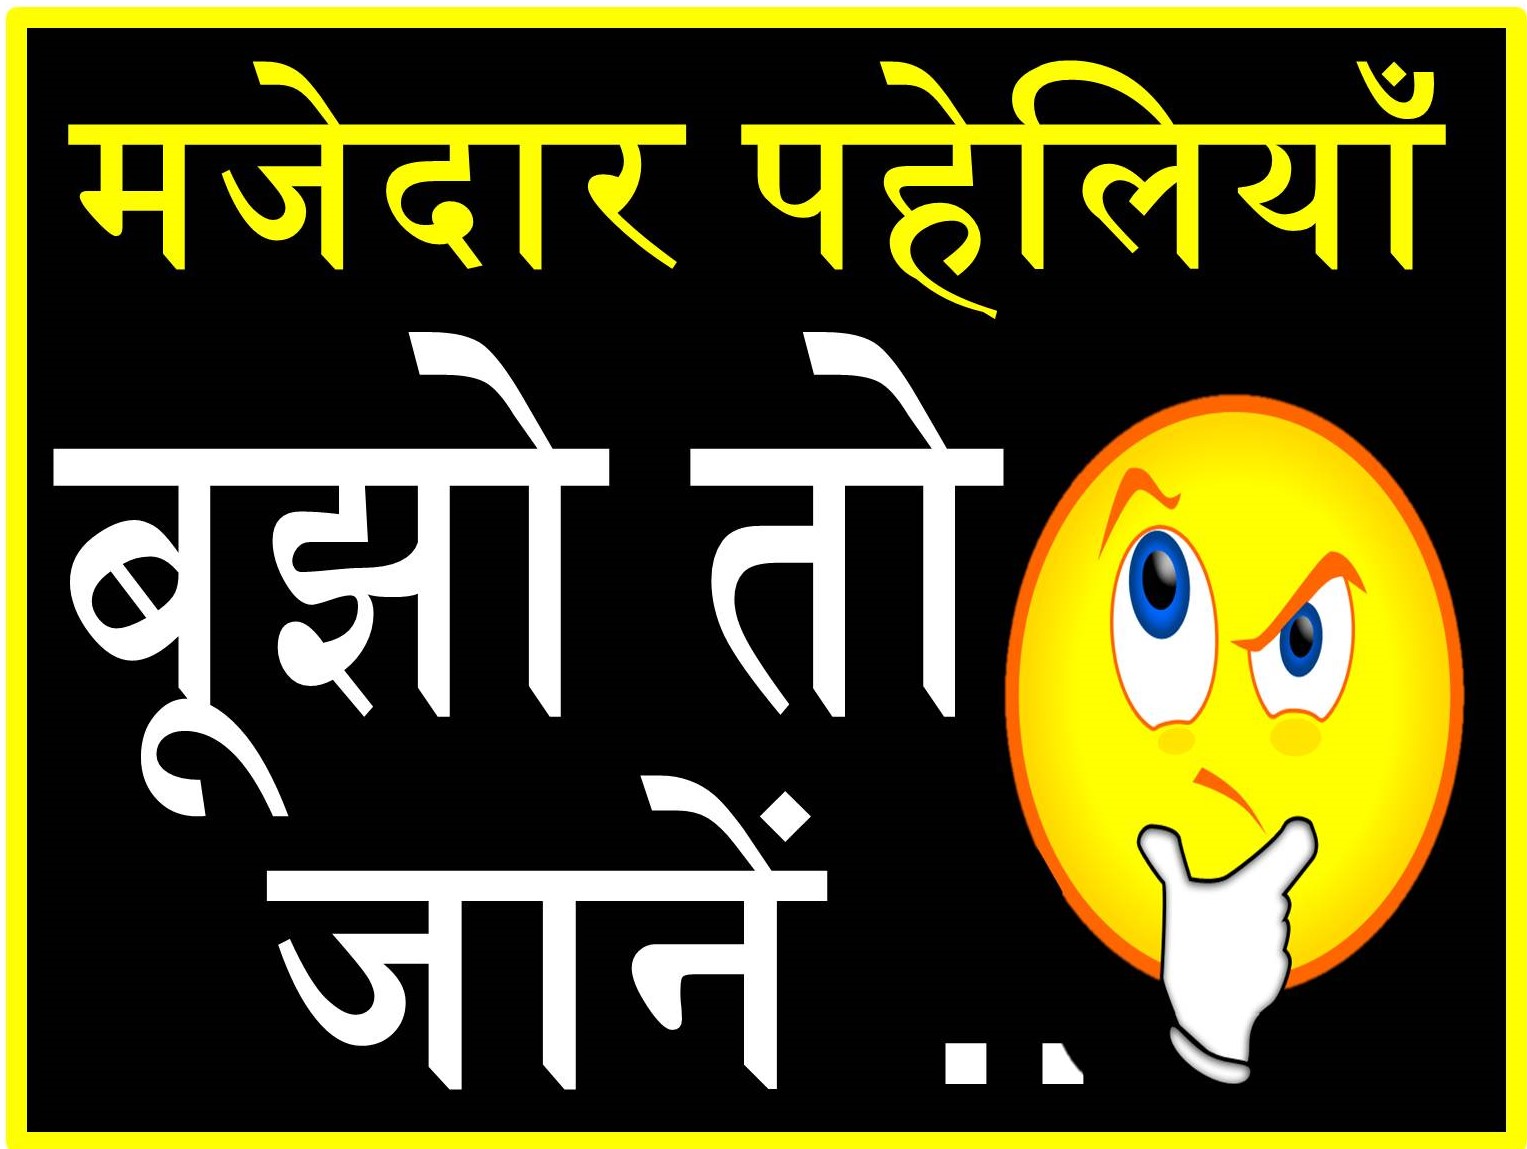 हिंदी पहेलियाँ - Hindi Paheliyan with Answer - पहेलियाँ ही पहेलियाँ उत्तर  के साथ - Hindi puzzles - Hindi Riddles - Paheliyan in Hindi with Answer -  Shayari Vs Jokes